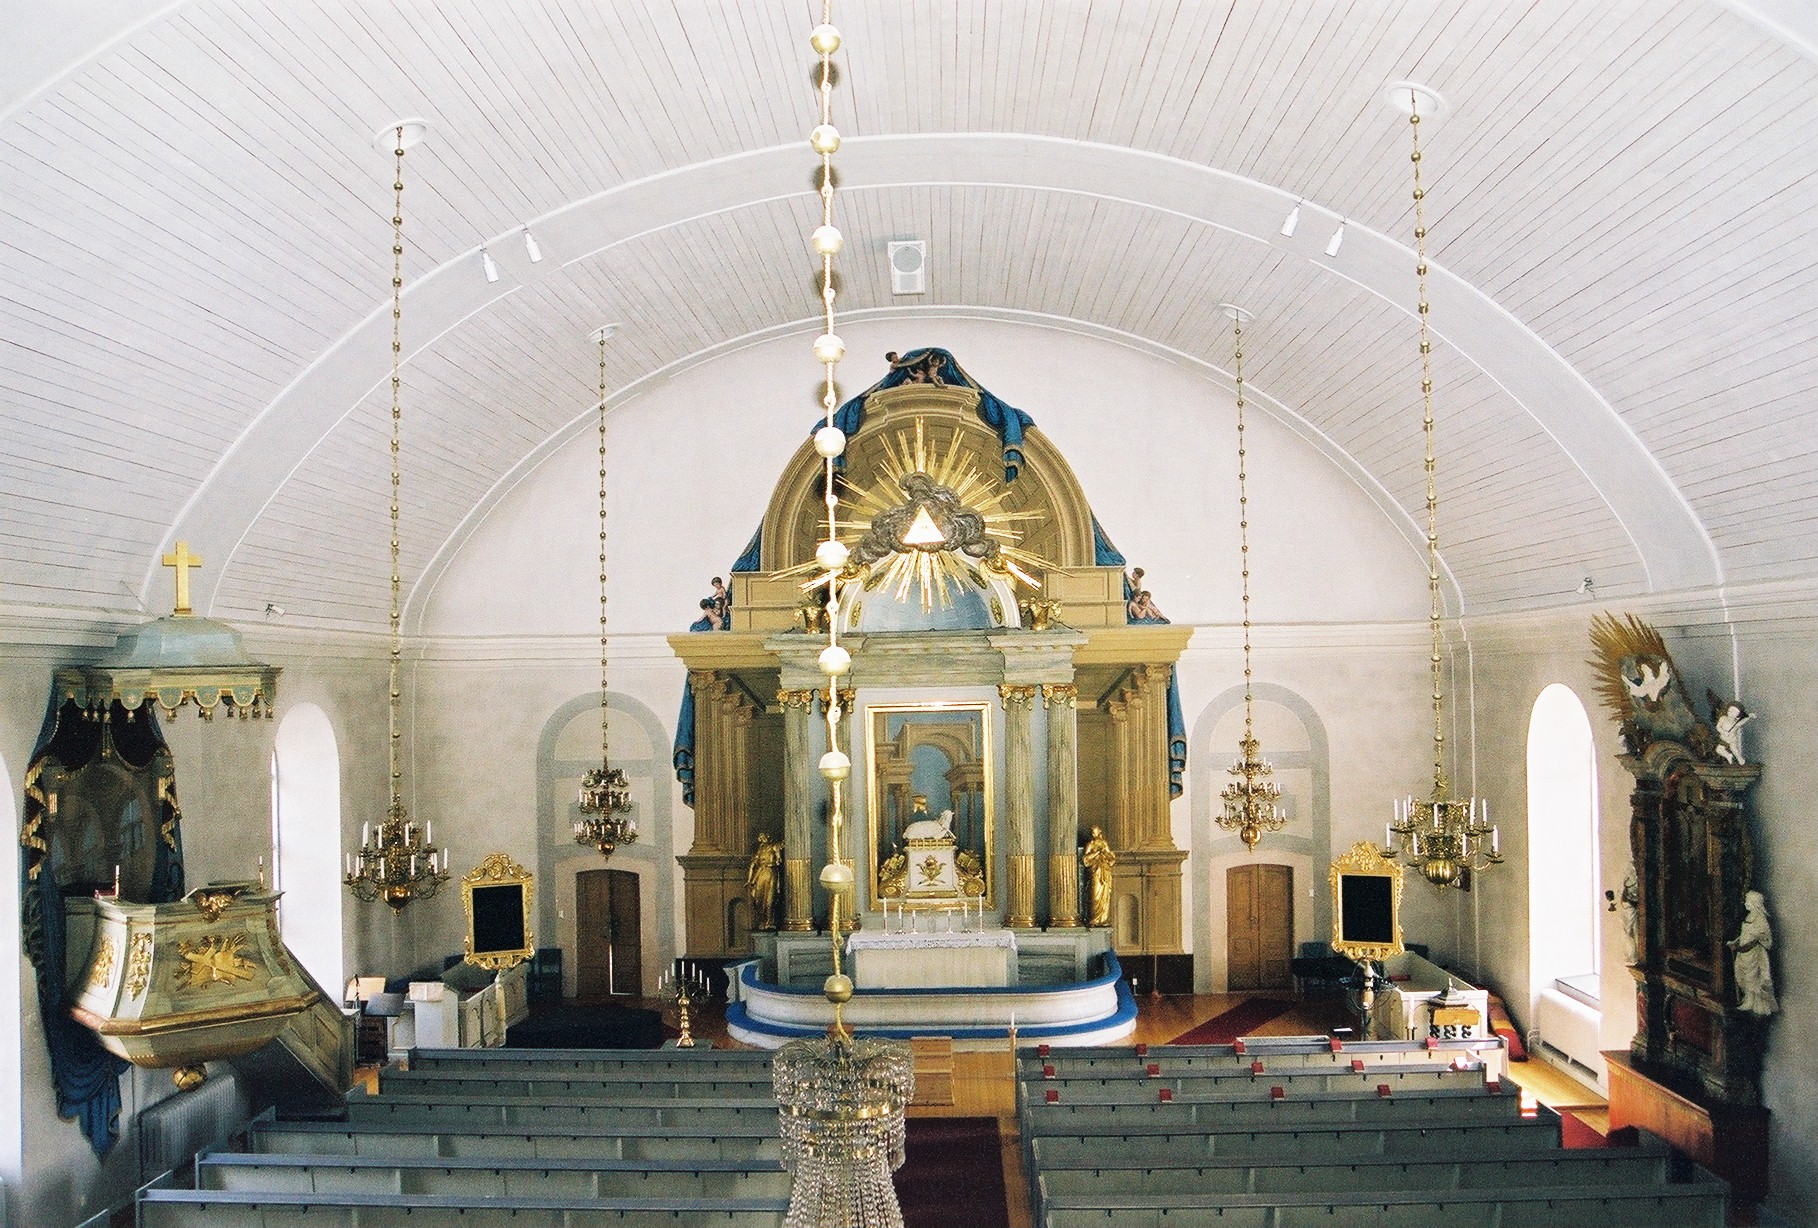 Bergs kyrka, interiör bild av kyrkorummet mot koret. 


Isa Lindkvist & Christina Persson, bebyggelseantikvarier vid Jamtli inventerade kyrkan 2005-2006 och är också fotografer till bilderna. 
